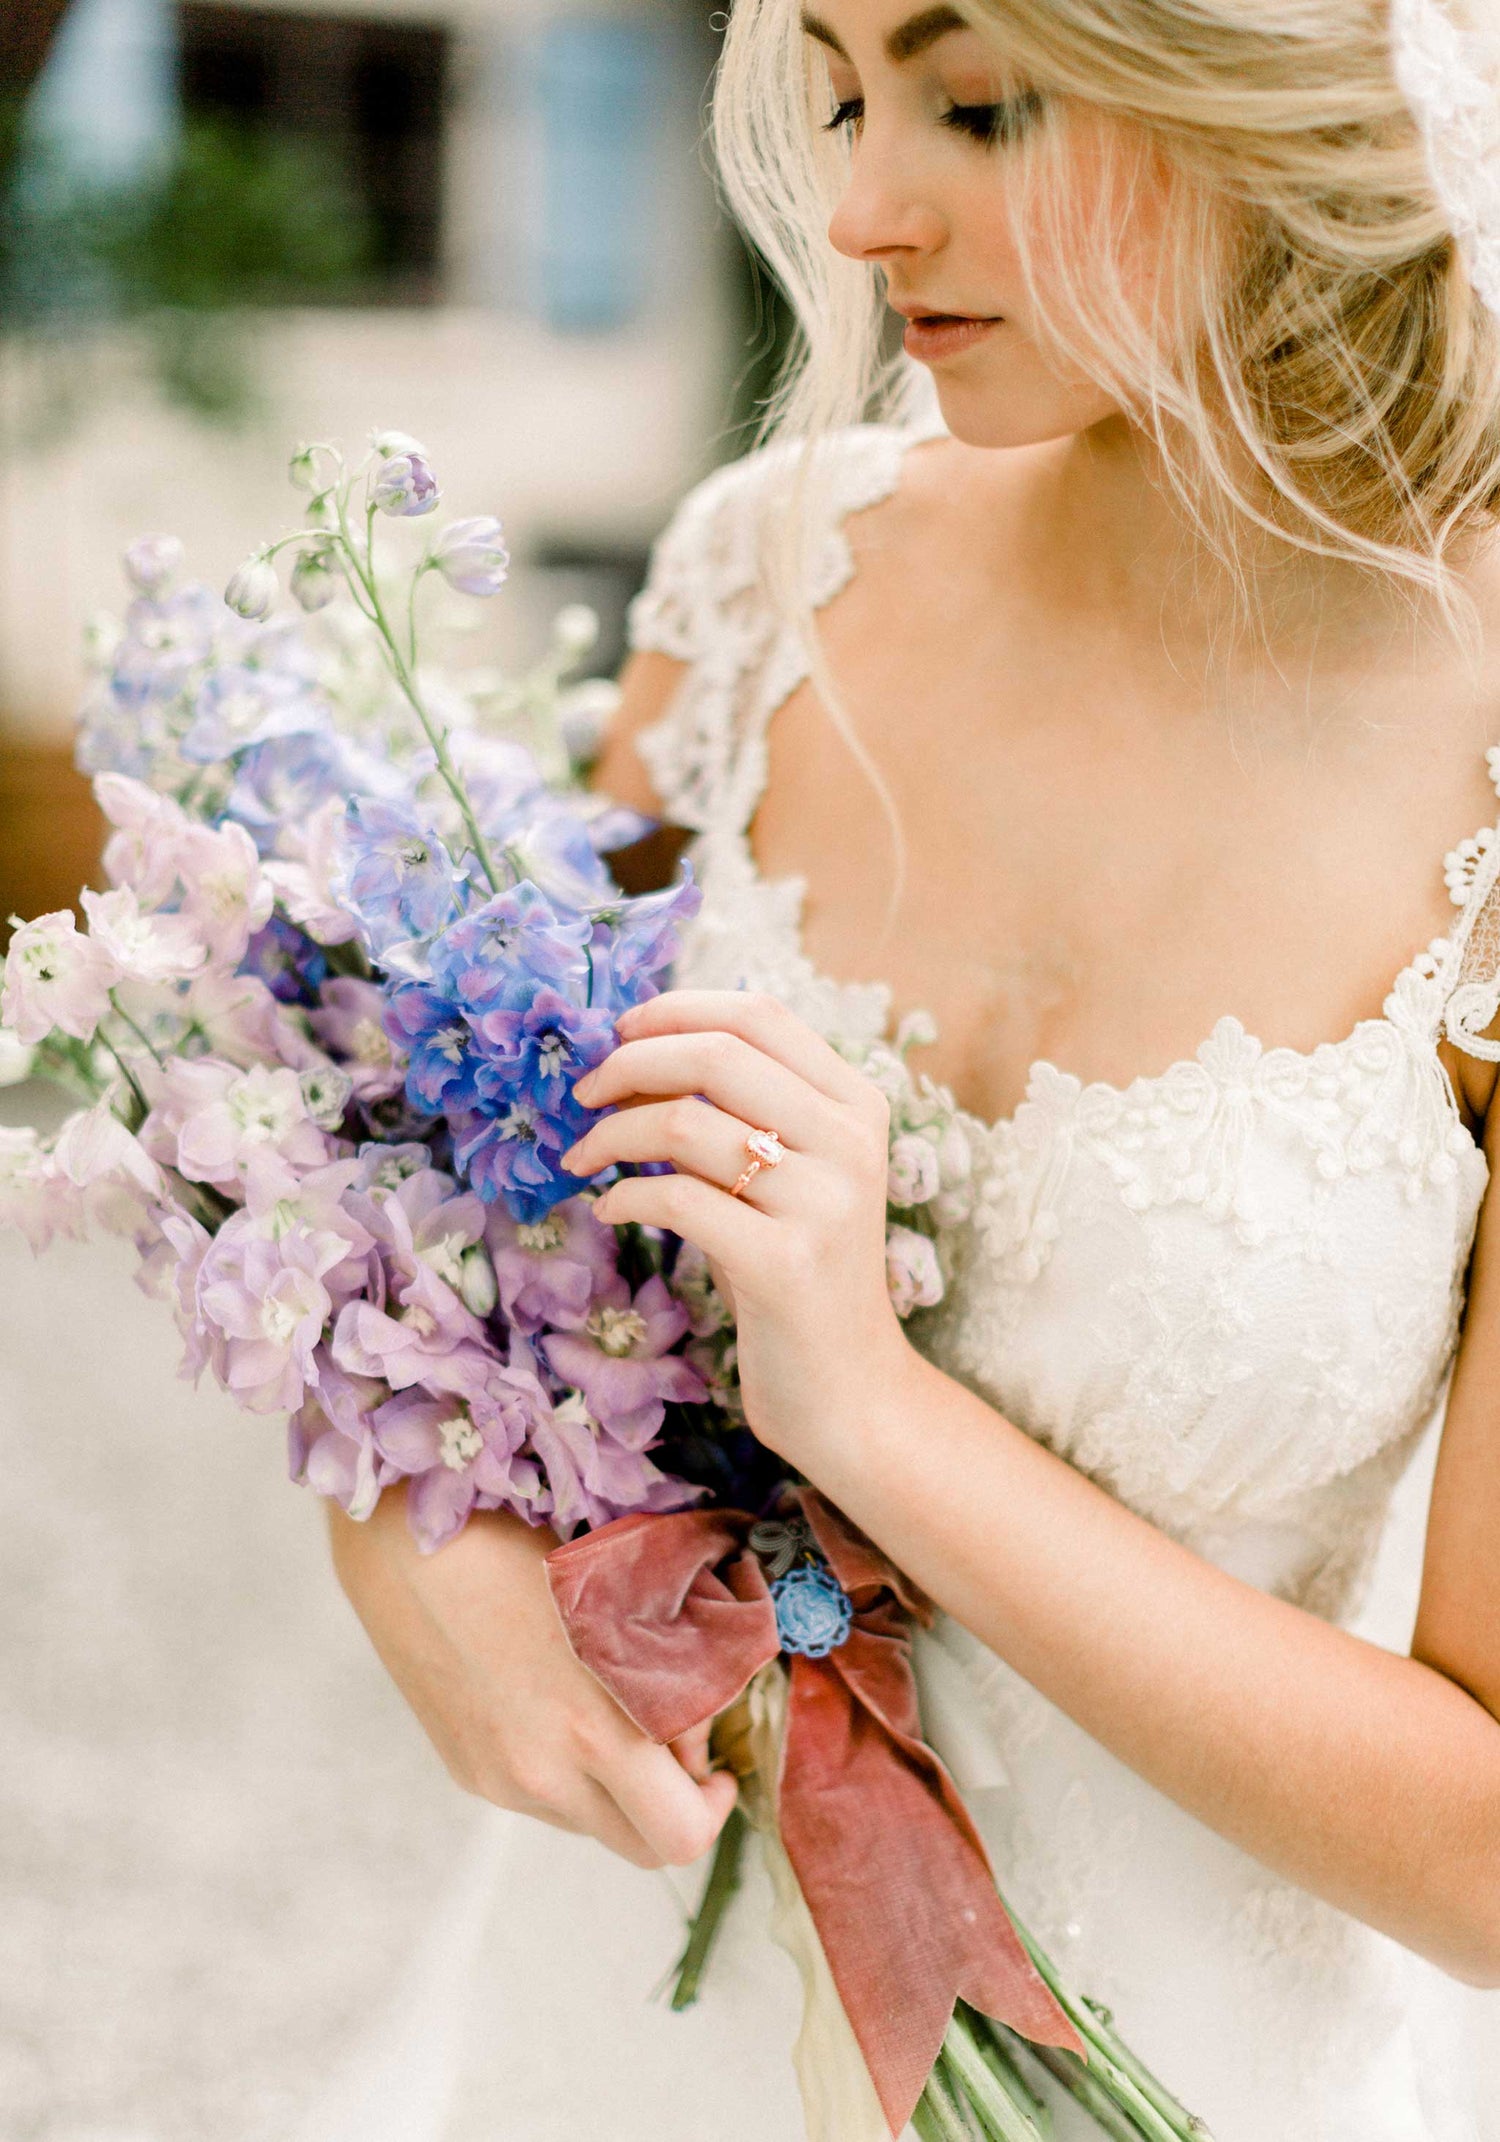 Chantilly Lace Wedding Dress  Ivory Cotton Lace Wedding Dress